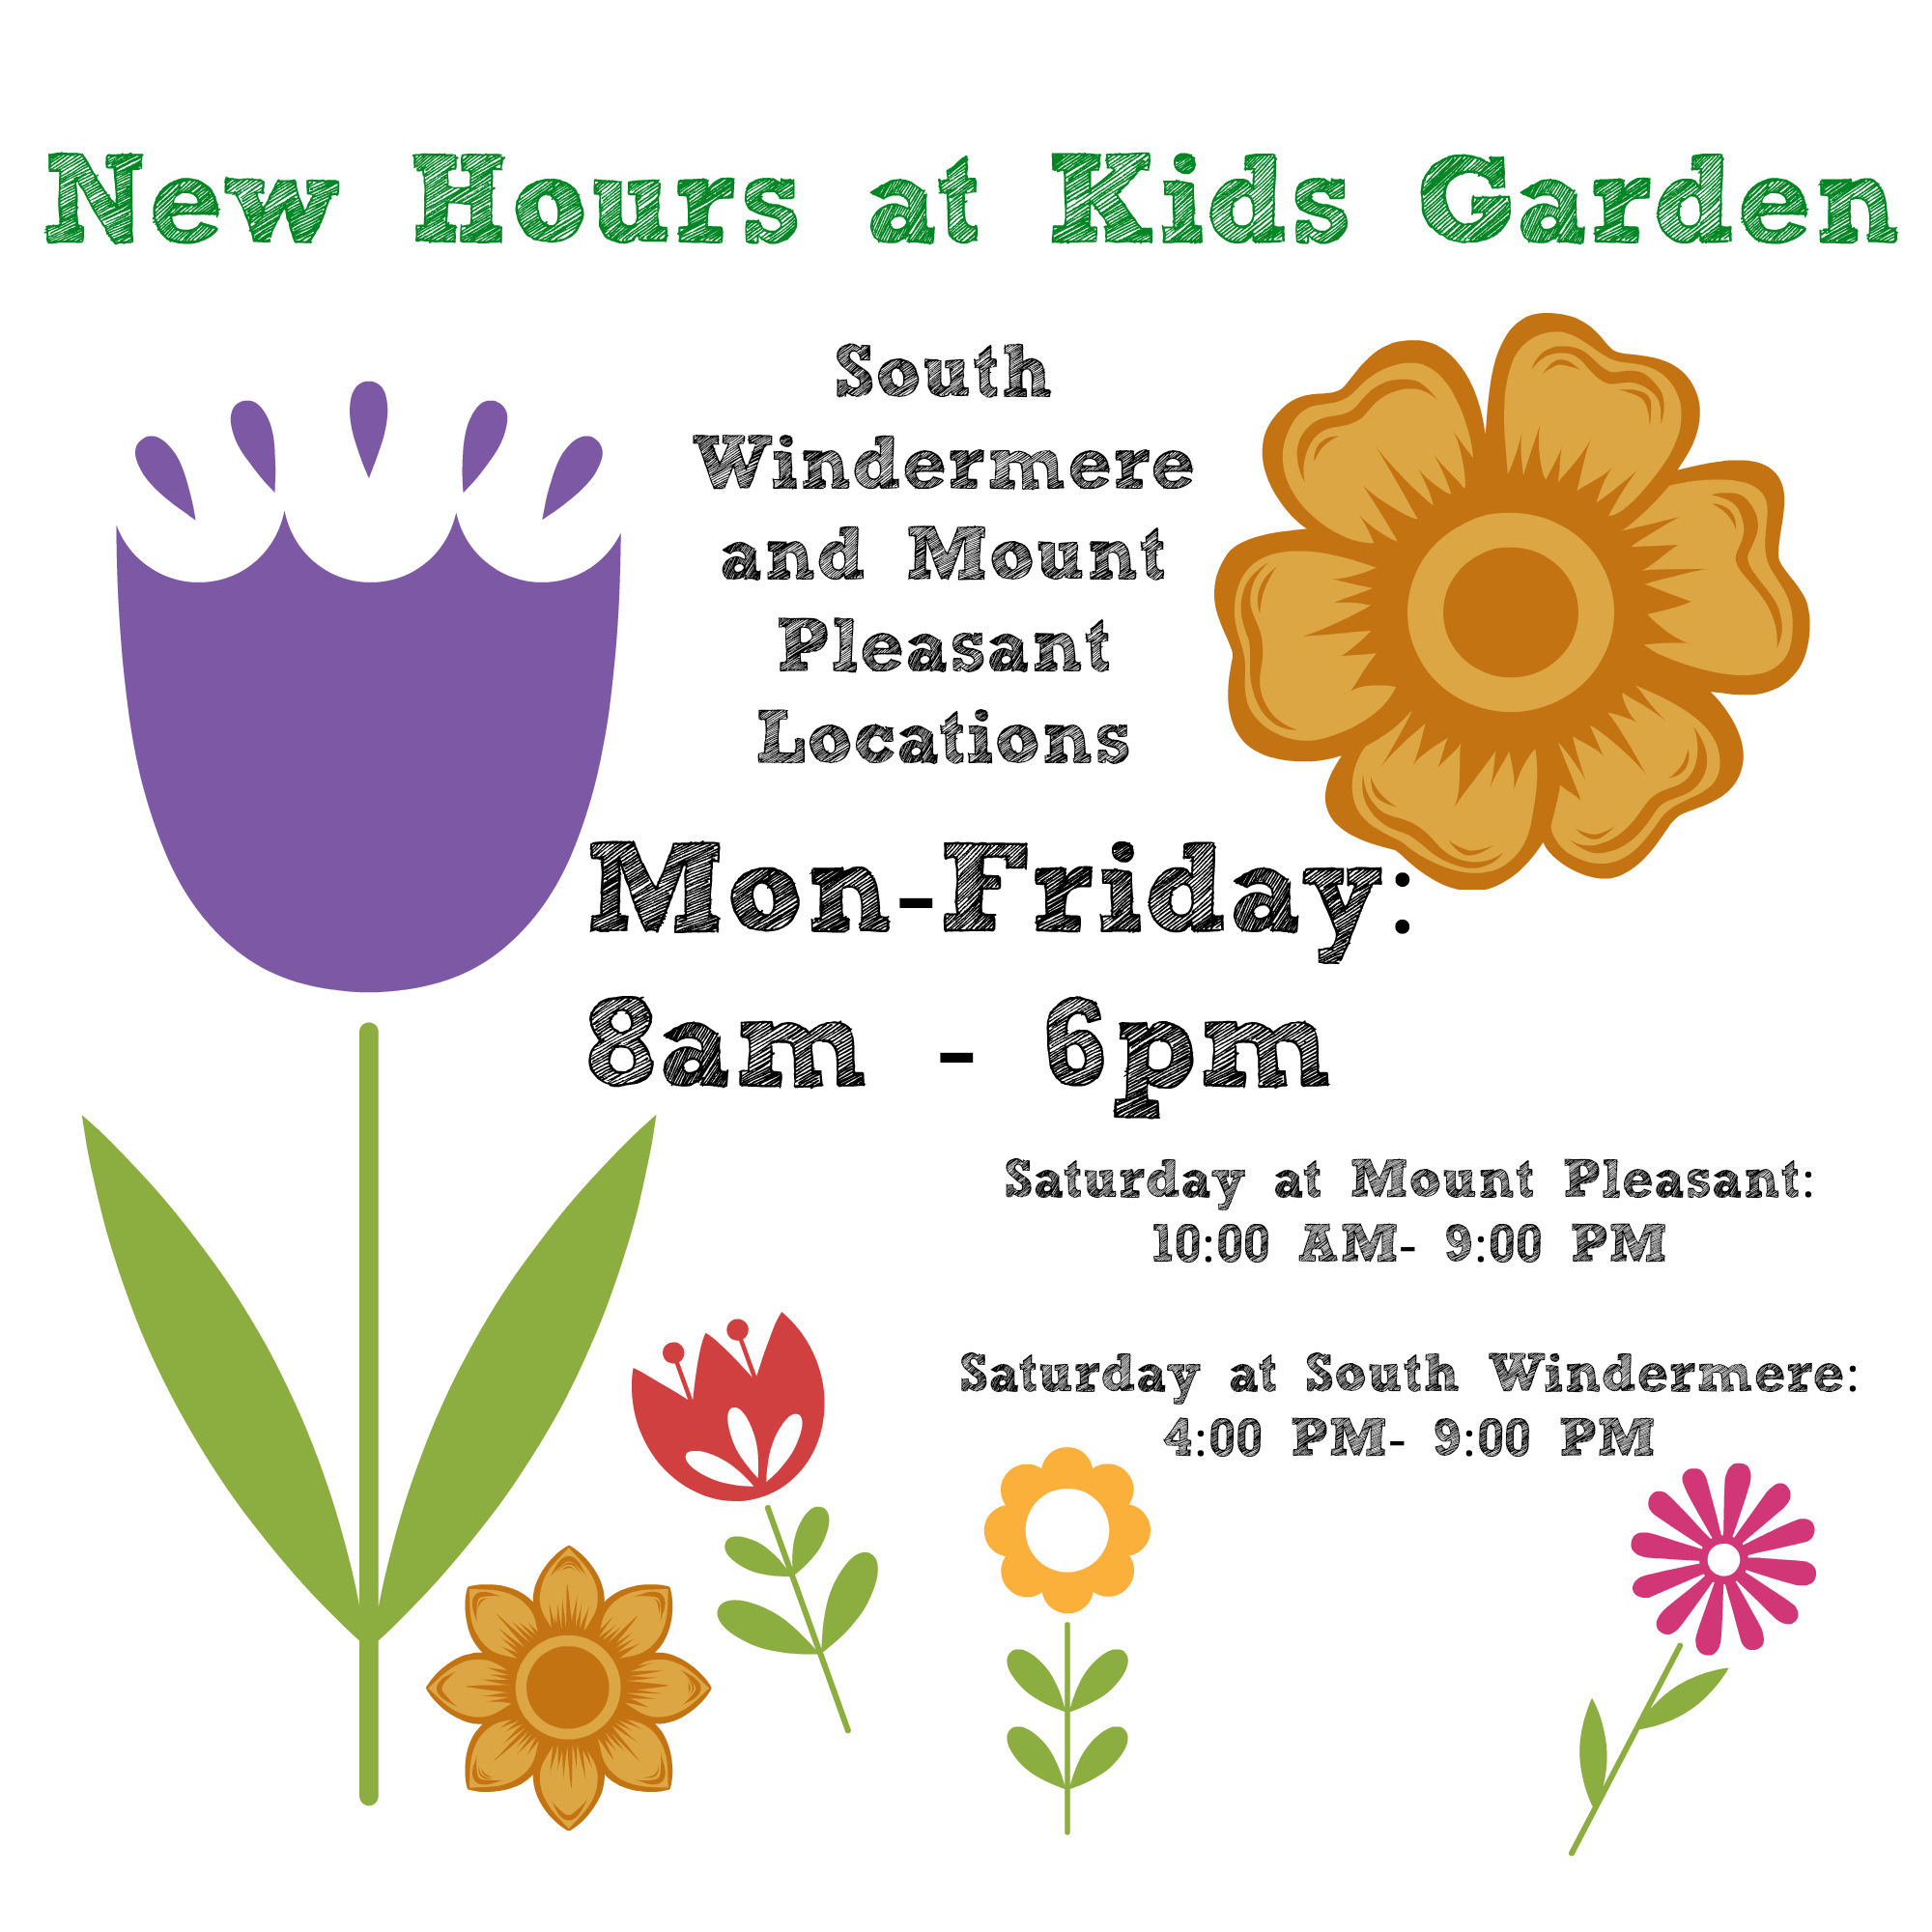 The new schedule at Kids Garden Mt. Pleasant.